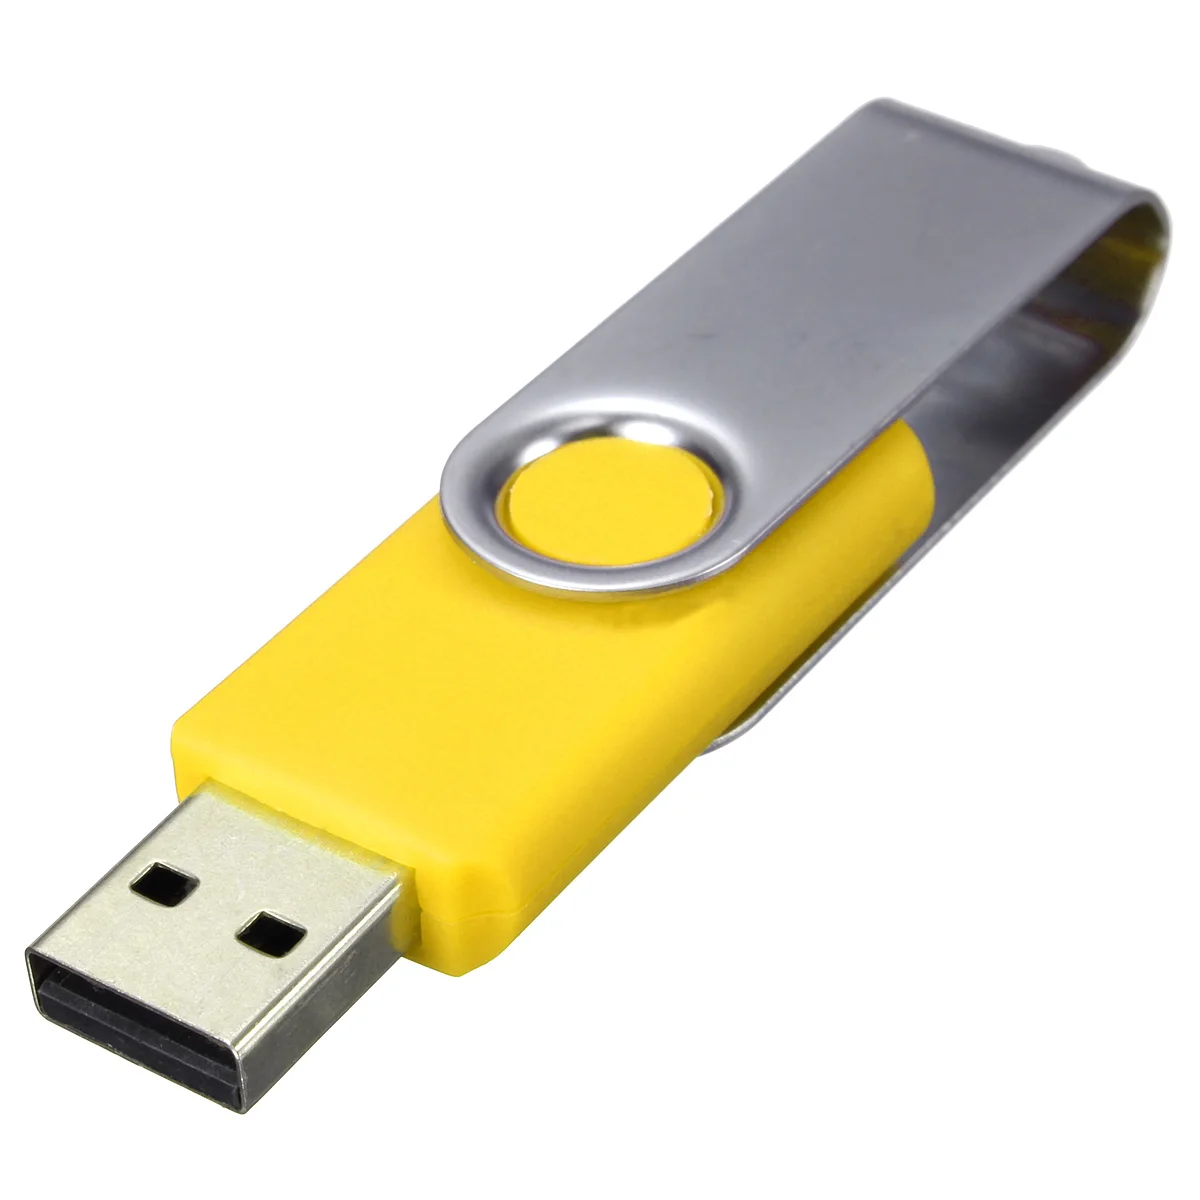 512 Мб Микро Поворотный USB флеш-накопитель поворотный флеш-накопитель 2,0 USB карта памяти флеш-накопитель для ПК ноутбука - Цвет: Yellow